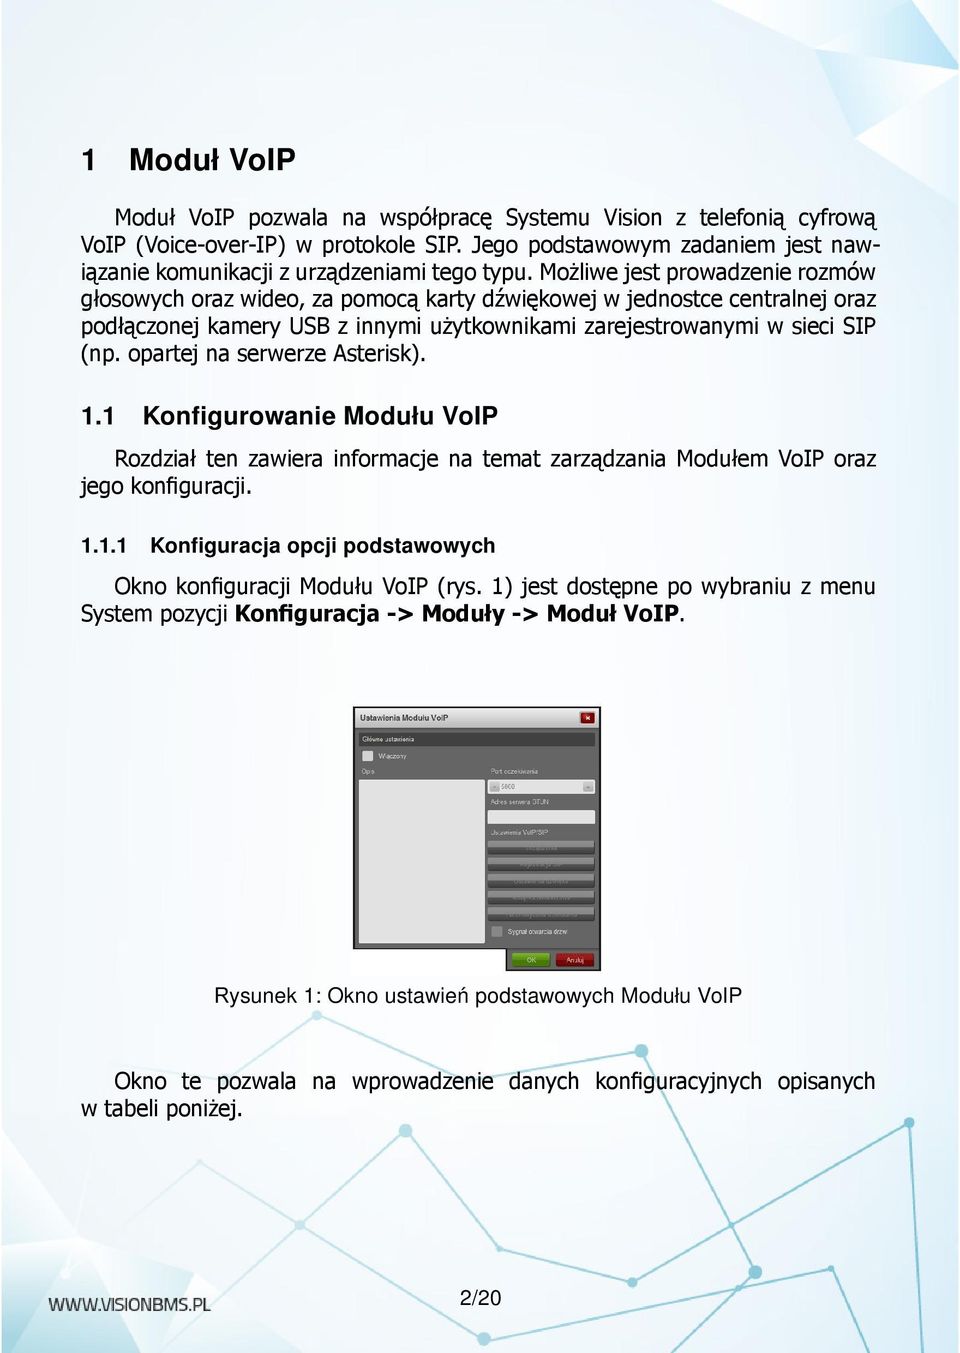 opartej na serwerze Asterisk). 1.1 Konfigurowanie Modułu VoIP Rozdział ten zawiera informacje na temat zarządzania Modułem VoIP oraz jego konfiguracji. 1.1.1 Konfiguracja opcji podstawowych Okno konfiguracji Modułu VoIP (rys.